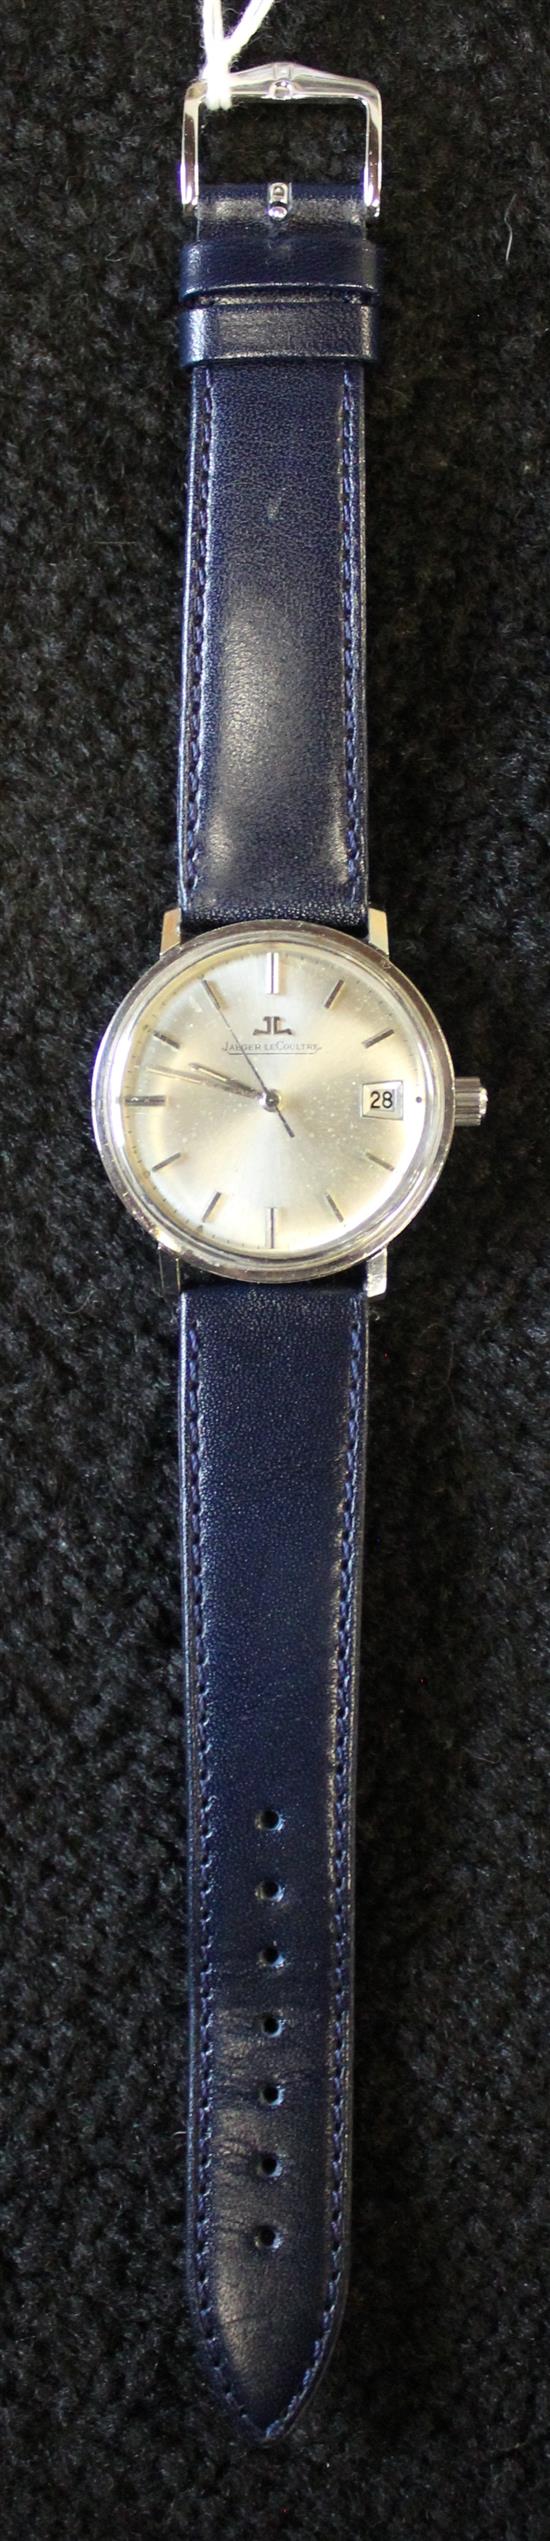 Jaeger LeCoultre steel wristwatch